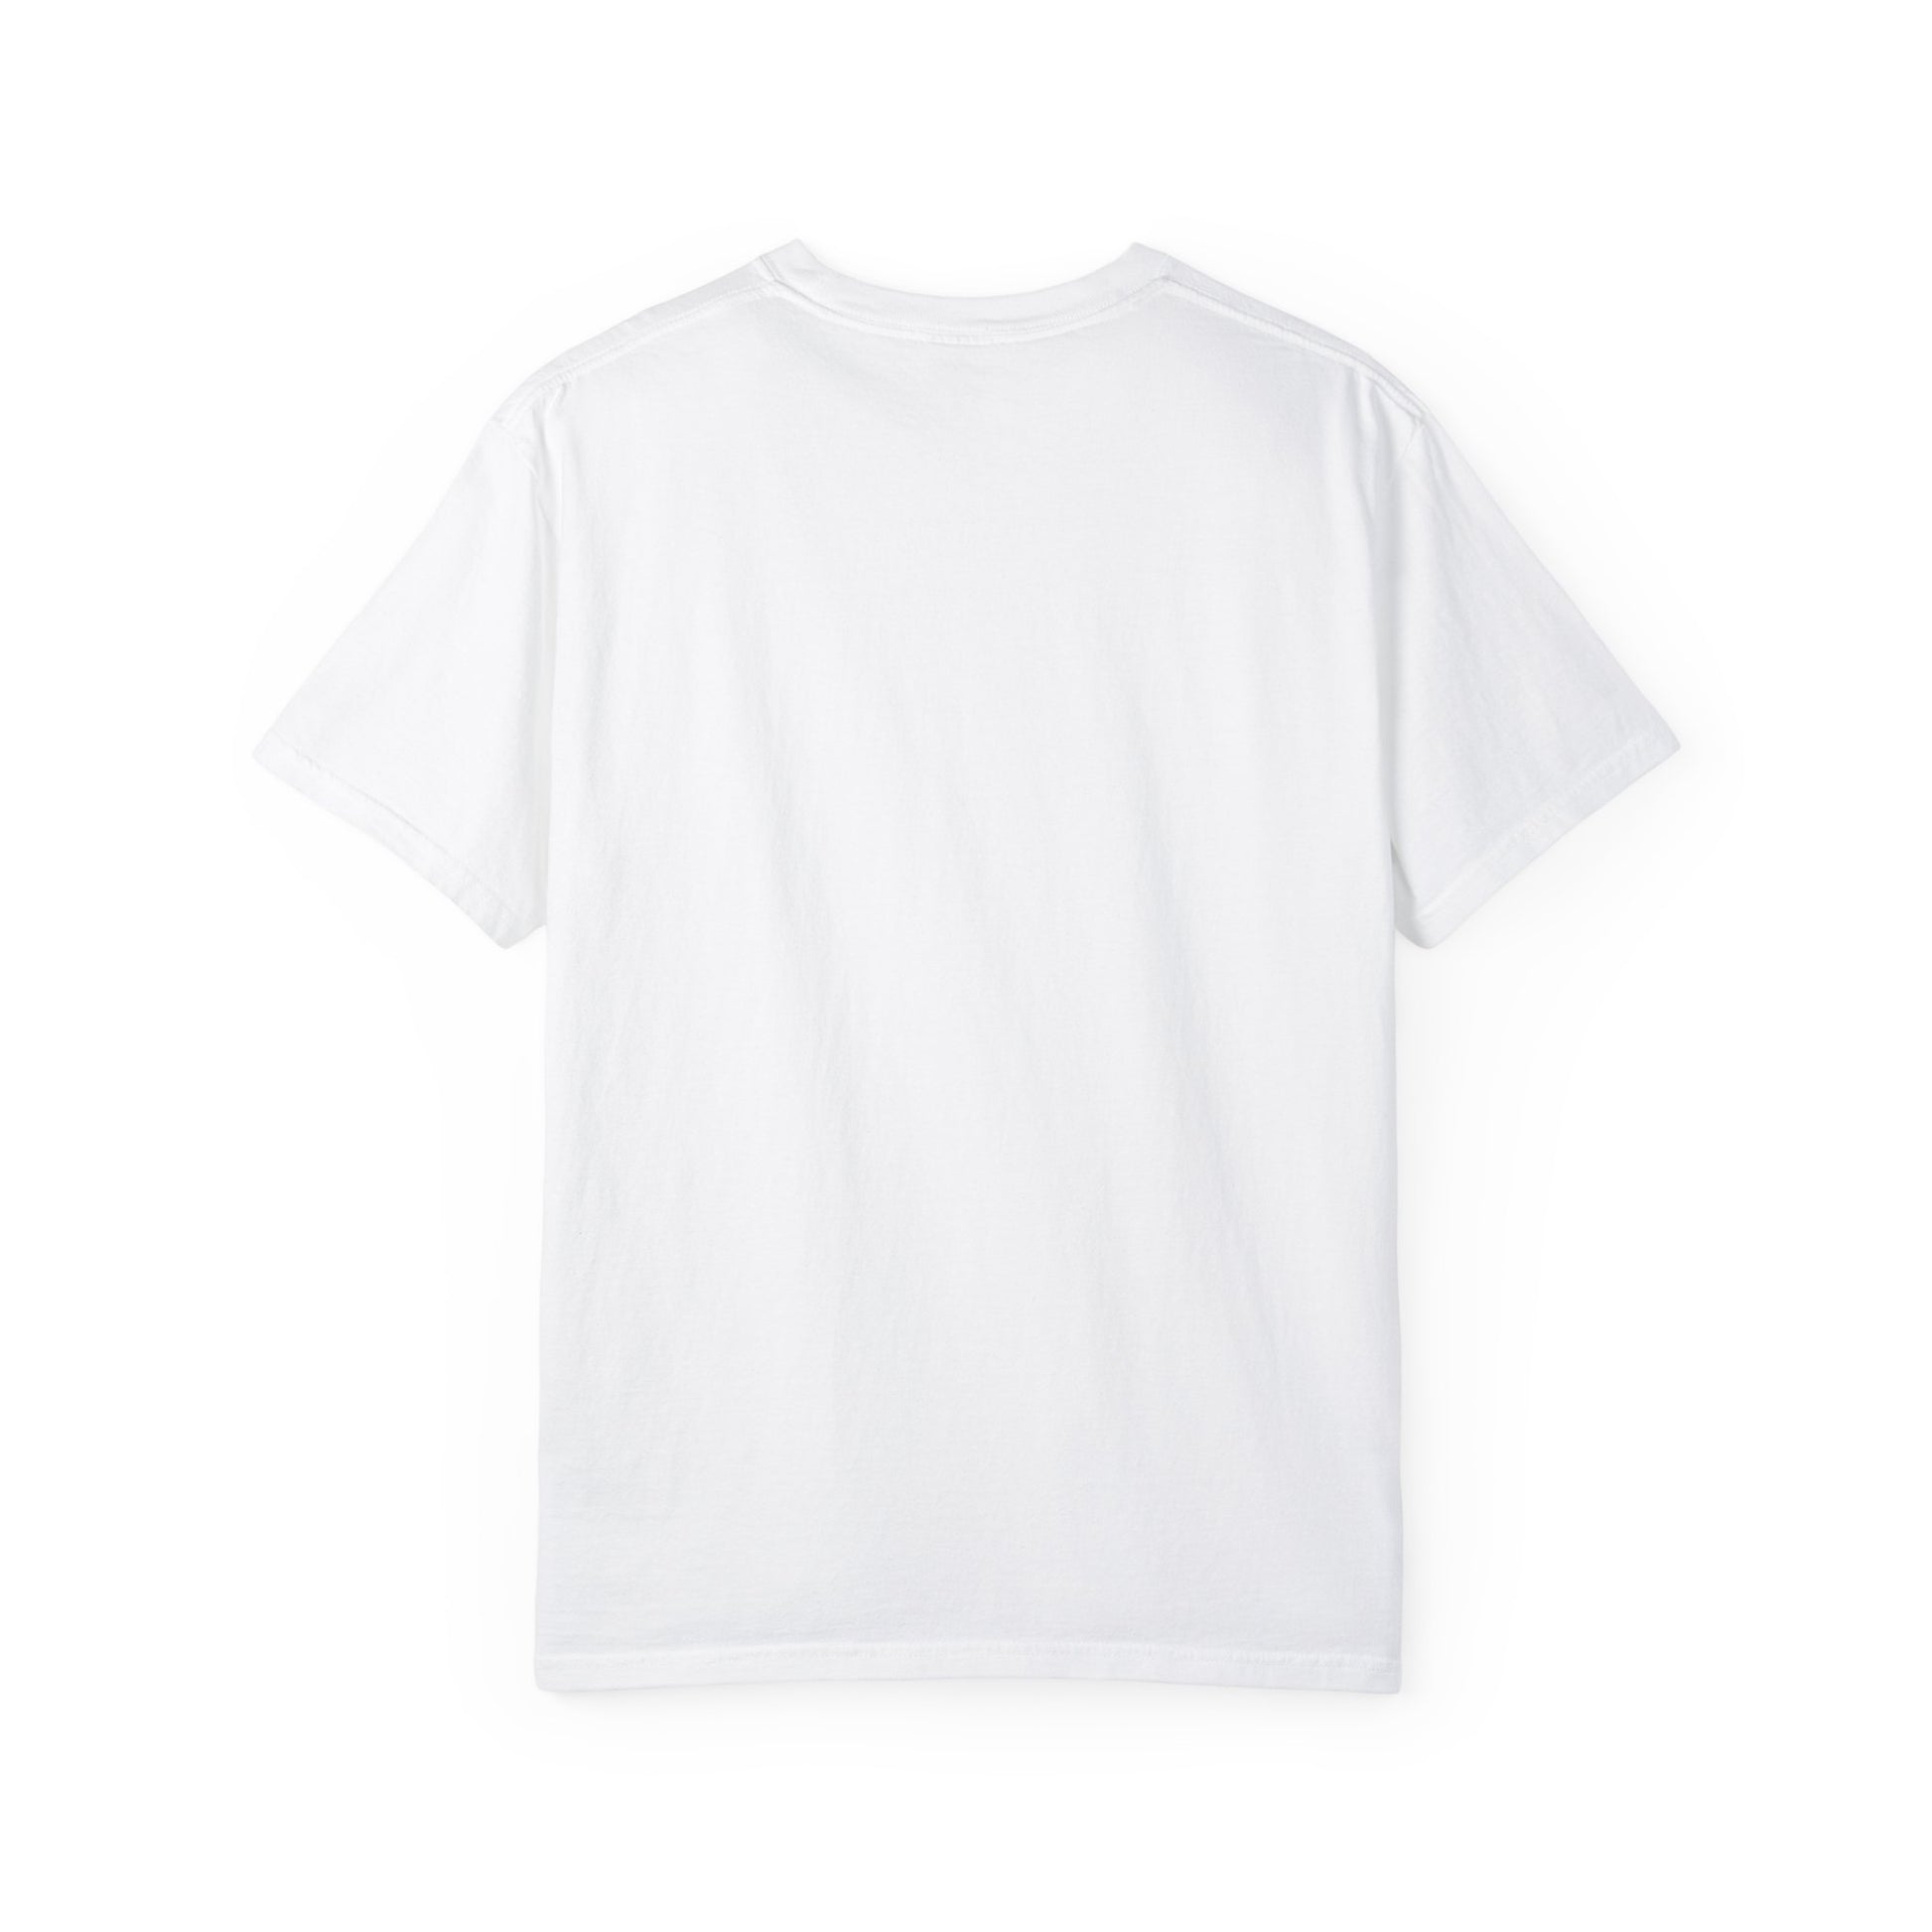 Proud of Grandma 2024 Graduate Unisex Garment-dyed T-shirt Cotton Funny Humorous Graphic Soft Premium Unisex Men Women White T-shirt Birthday Gift-22